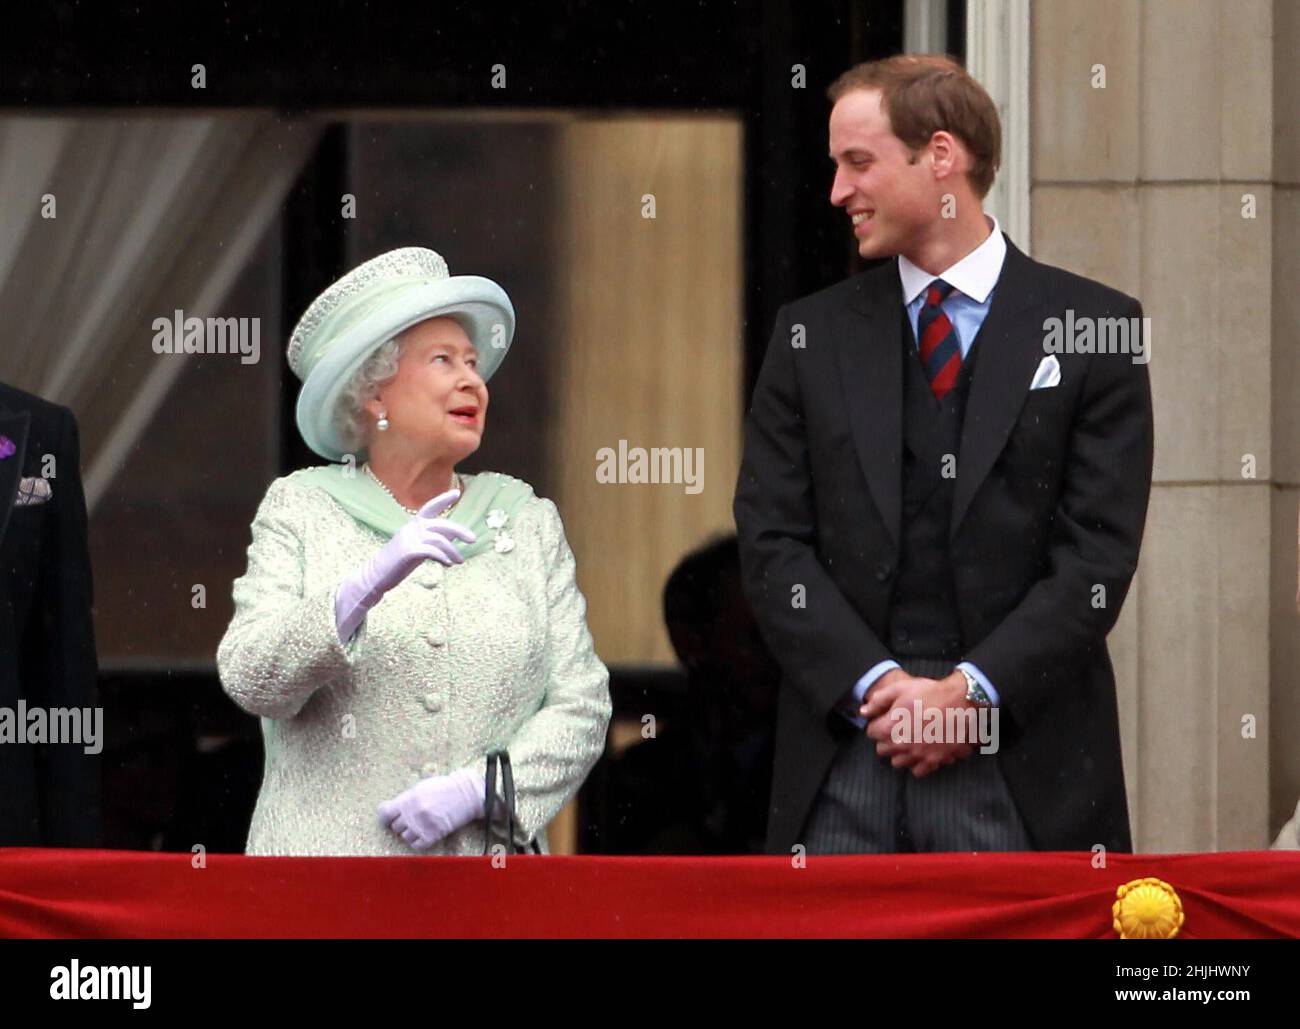 Foto di archivio datata 05/06/12 della Regina Elisabetta II e del Duca di Cambridge che appaiono sul balcone di Buckingham Palace come parte delle celebrazioni del Giubileo dei Diamanti. Data di emissione: Domenica 30 gennaio 2022. Foto Stock